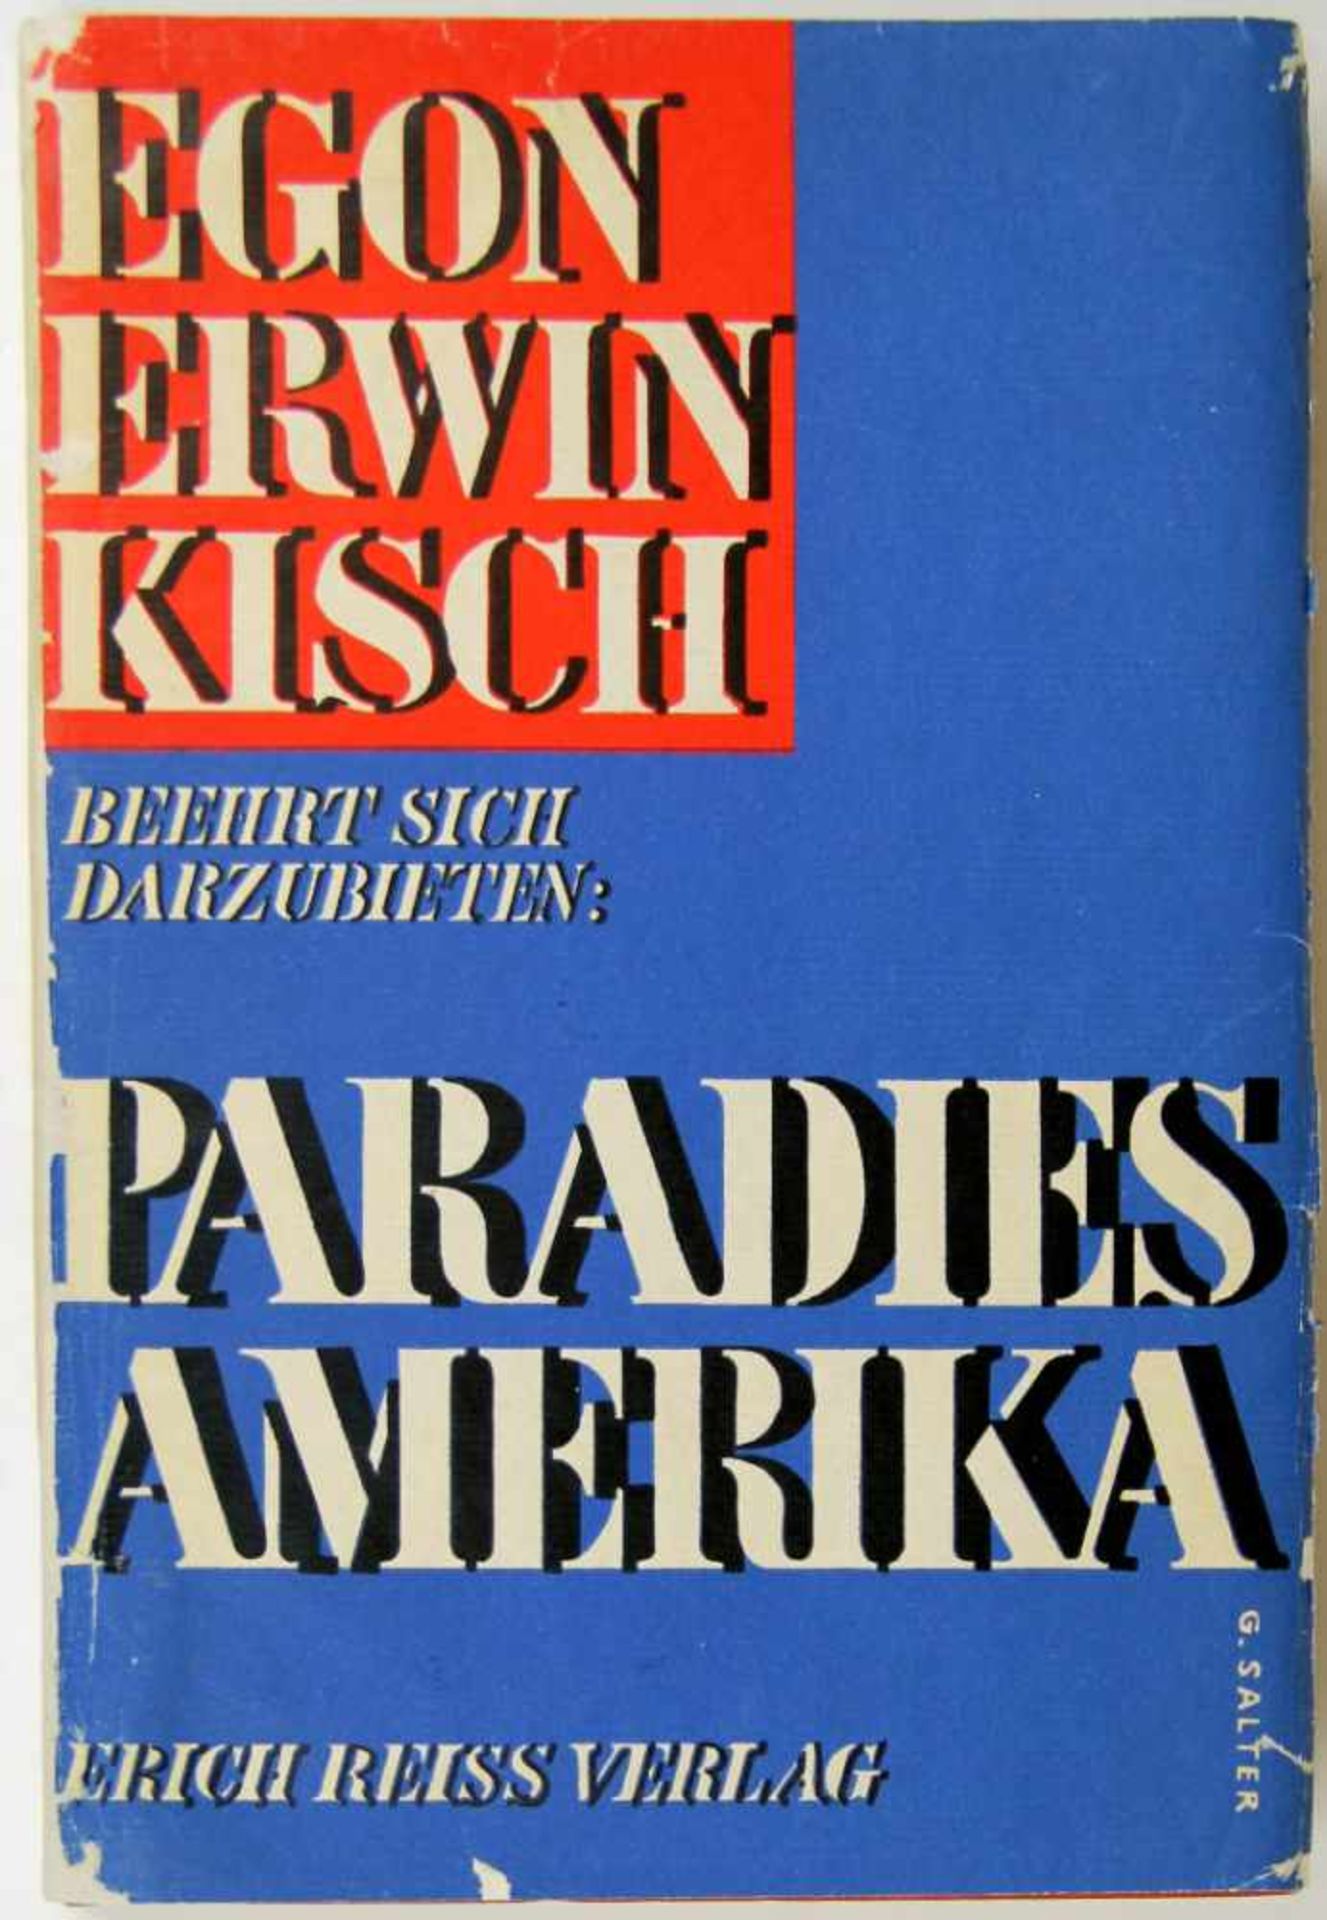 Kisch, Egon Erwin:Konvolut mit 5 Erstausgaben. Berlin, Erich Reiss 1926-1931. Ca. 20,5 cx 14 cm. - Bild 3 aus 5